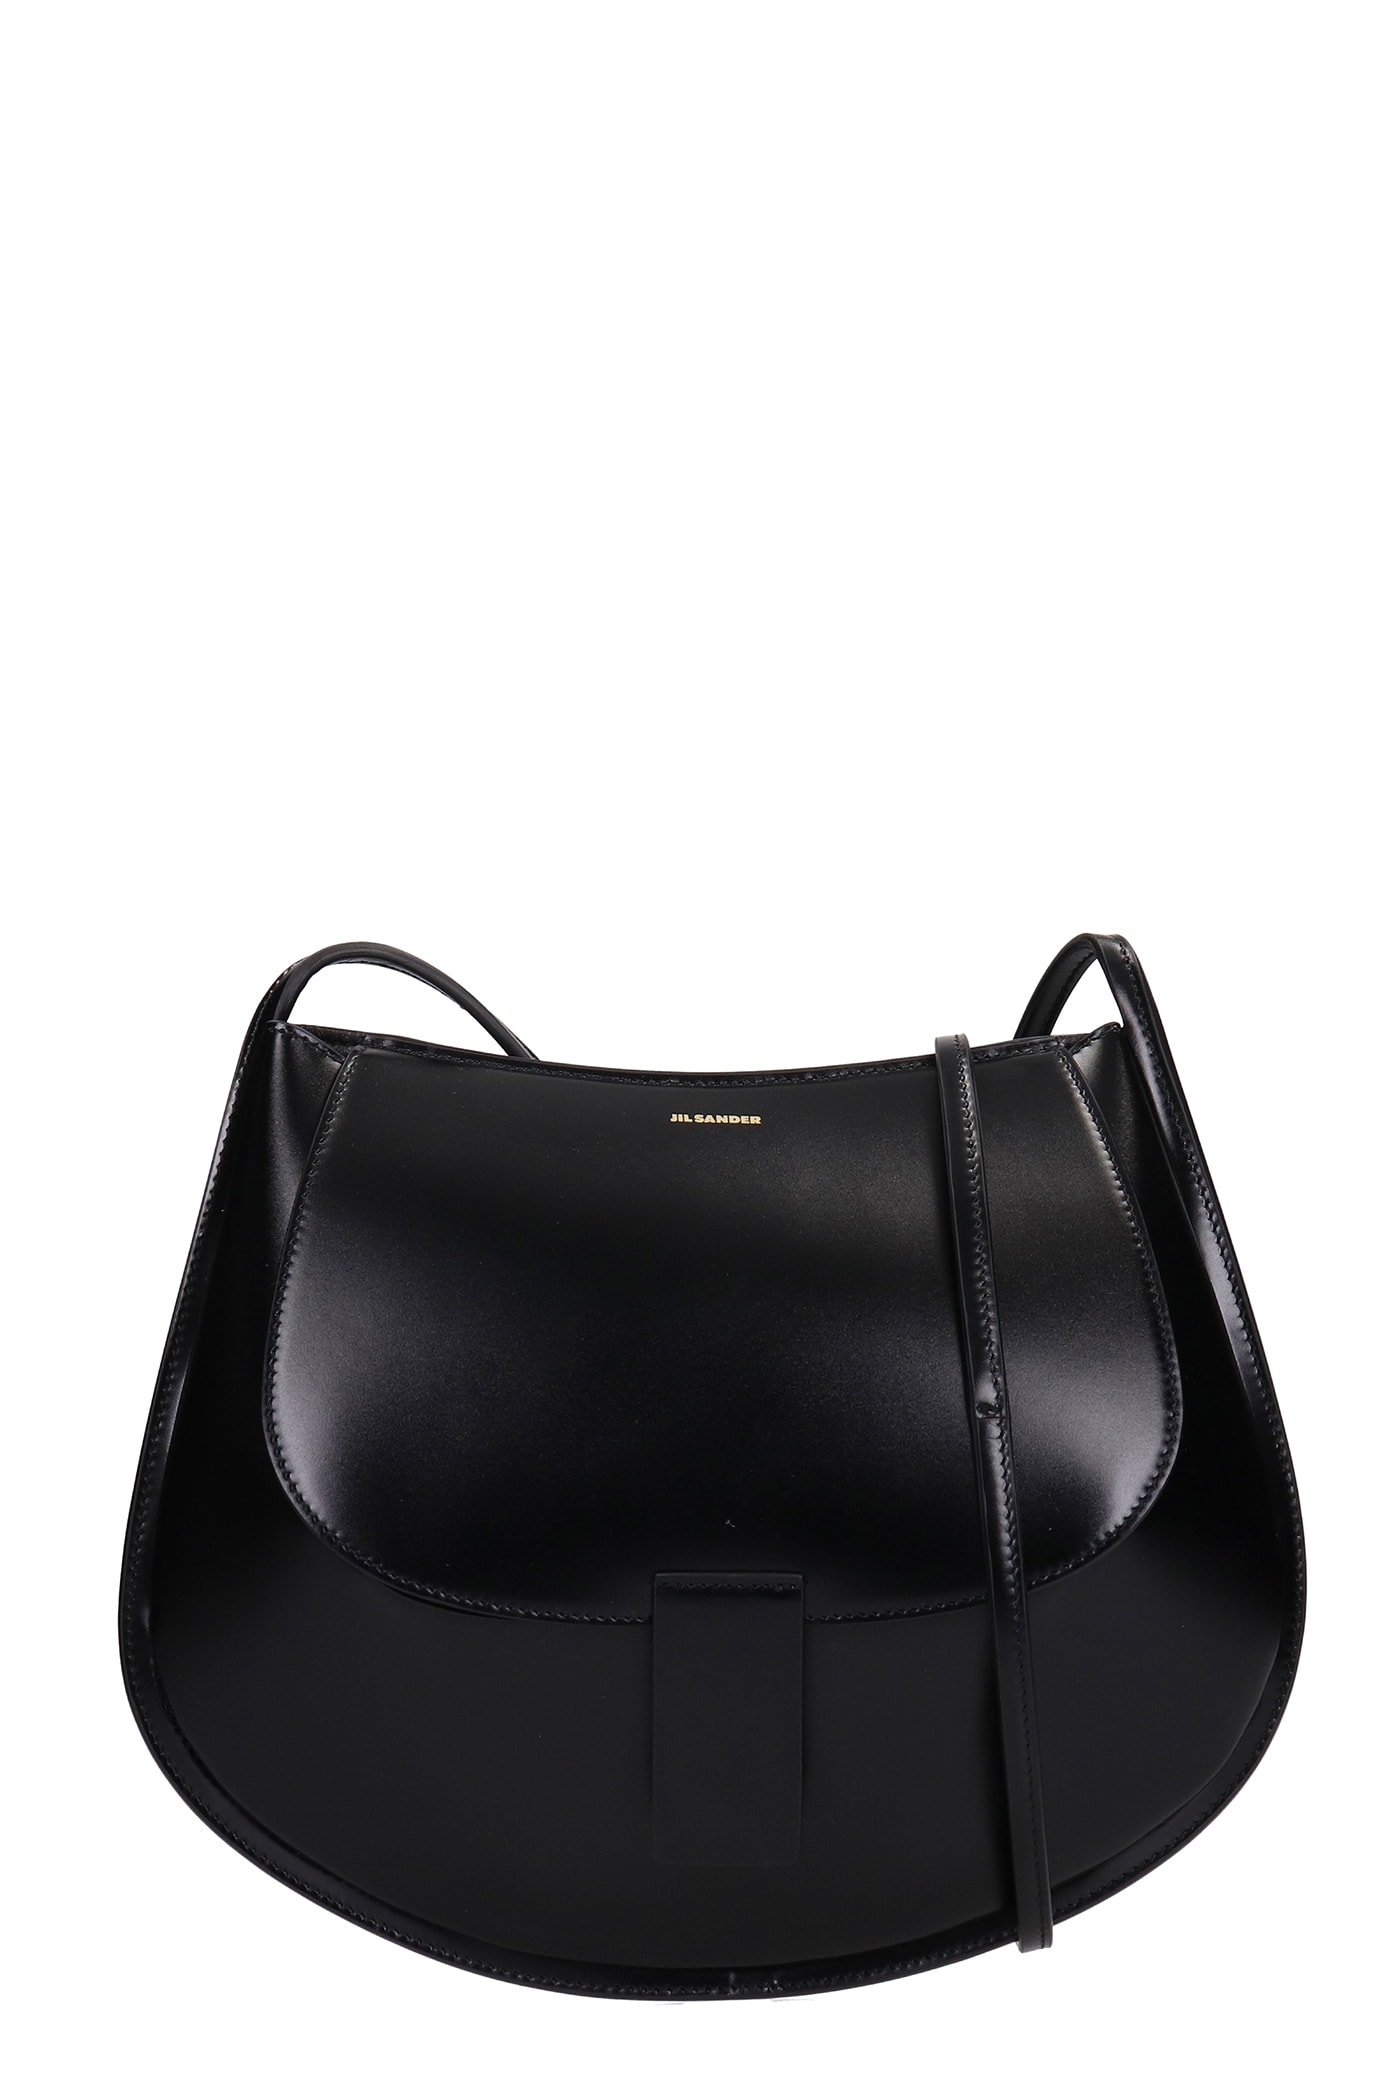 Jil Sander Cresent Small Shoulder Bag In Black Leather